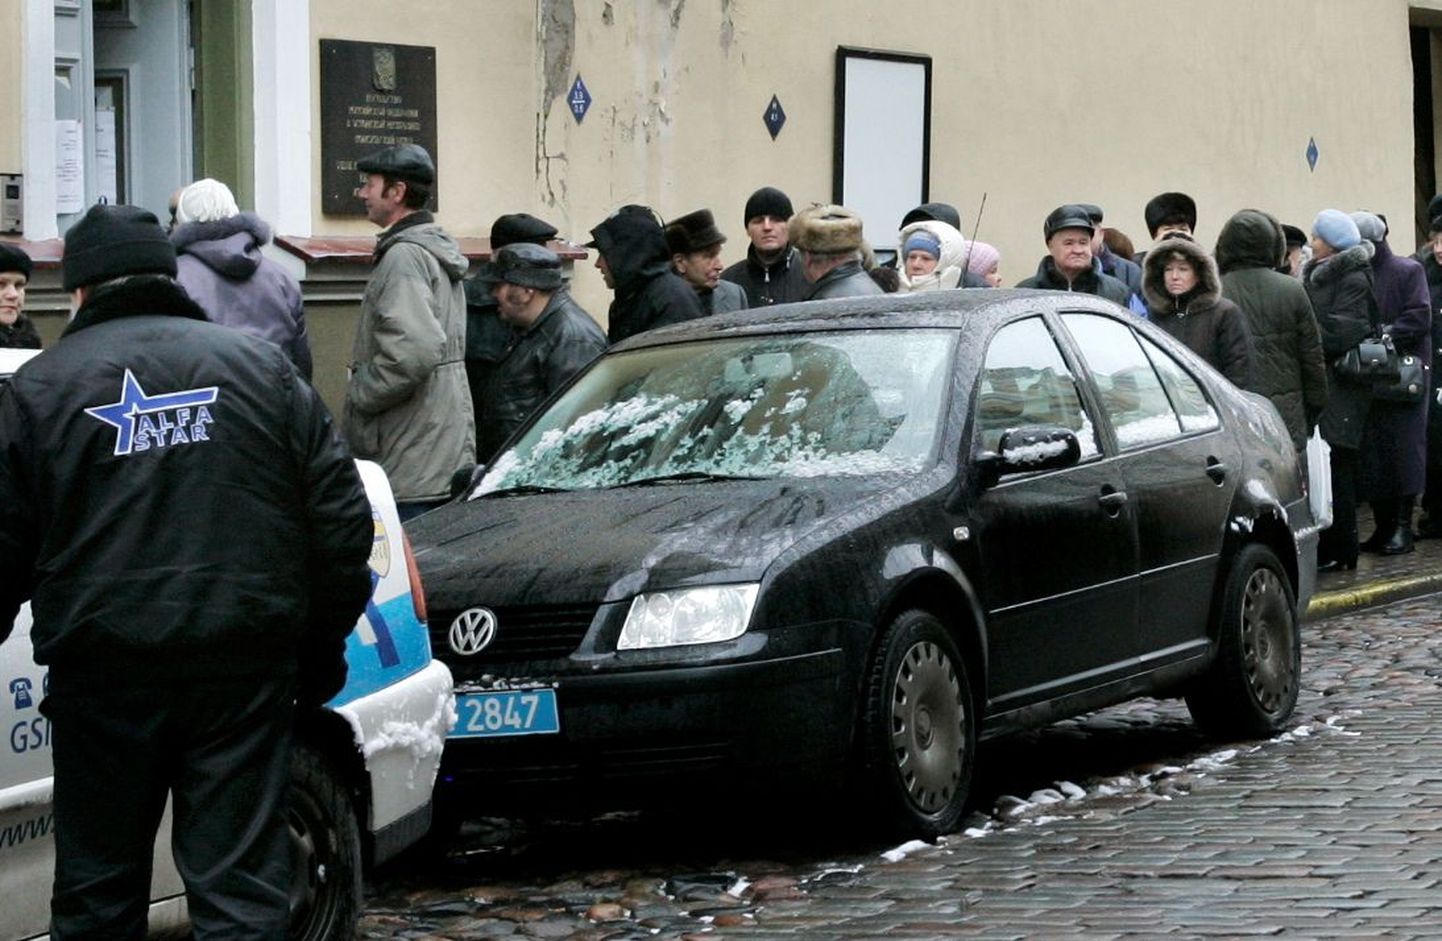 Pildil olev sinise CD-numbriga auto seisab Tallinnas Vene saatkonna juures ja pole seega Helsinki parkimistrahvides süüdi.